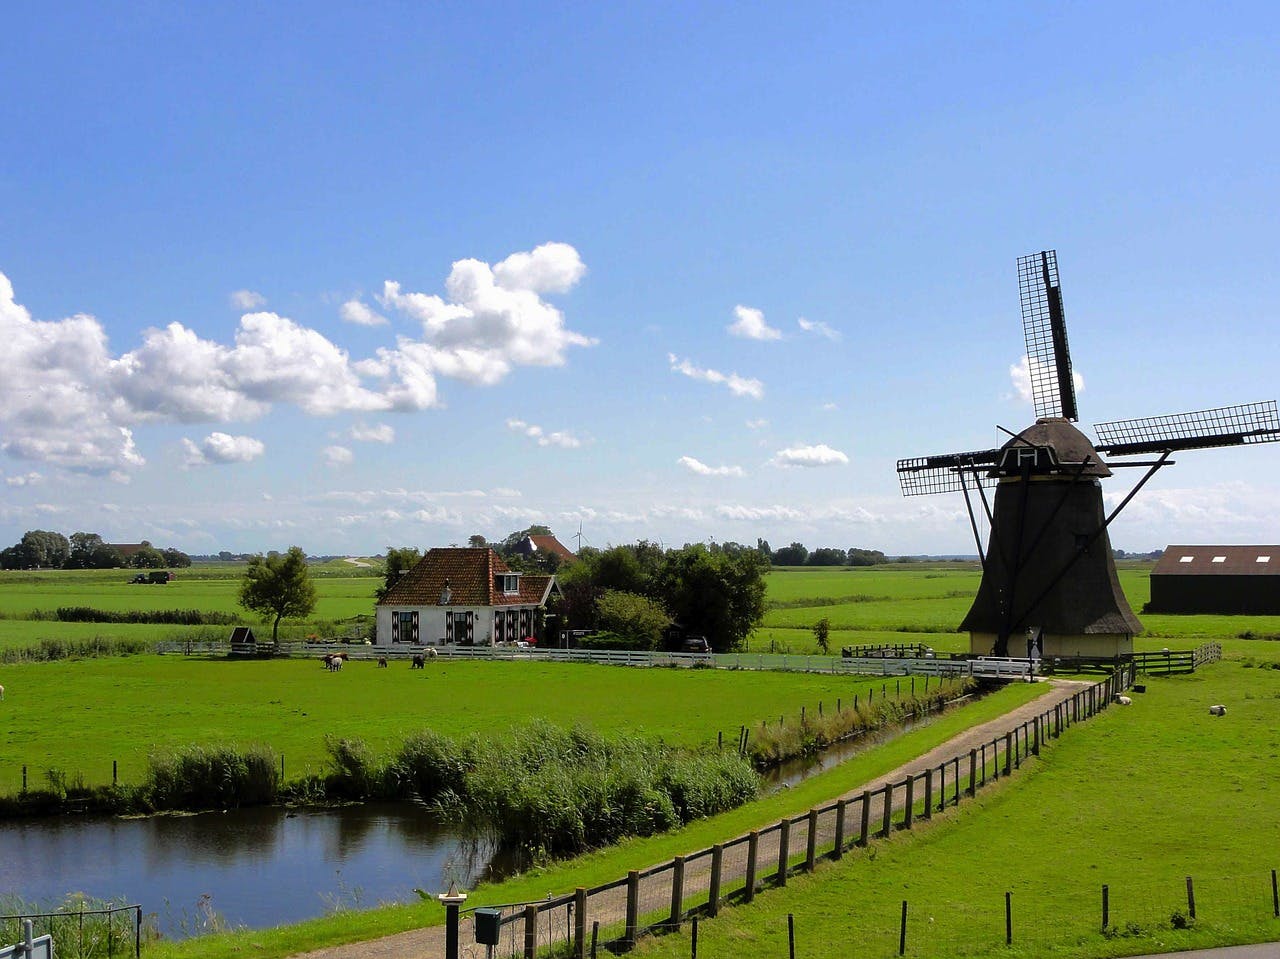 Campercontact Länderinformationen - Mühlen in der niederländischen Landschaft